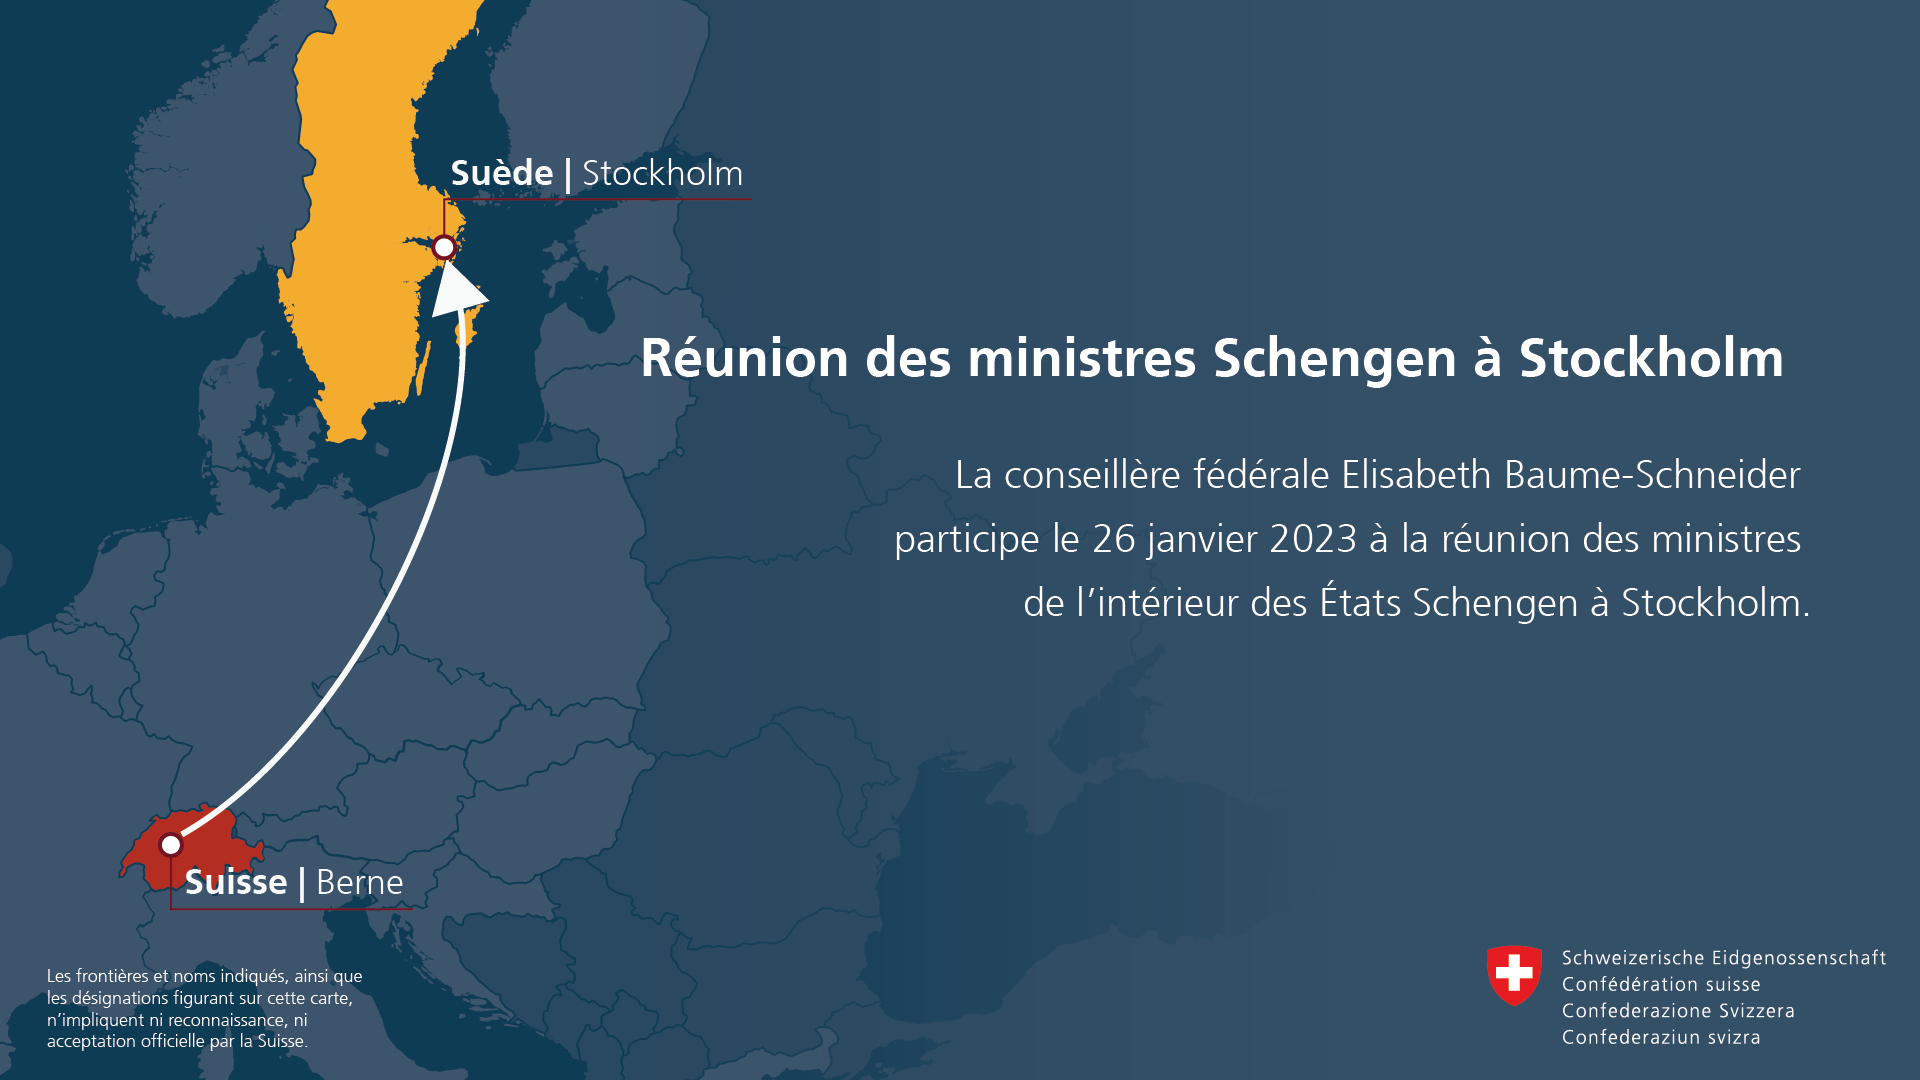 La conseillère fédérale Elisabeth Baume-Schneider participe le 26 janvier 2023 à la réunion des ministres de l'intérieur des États Schengen à Stockholm.